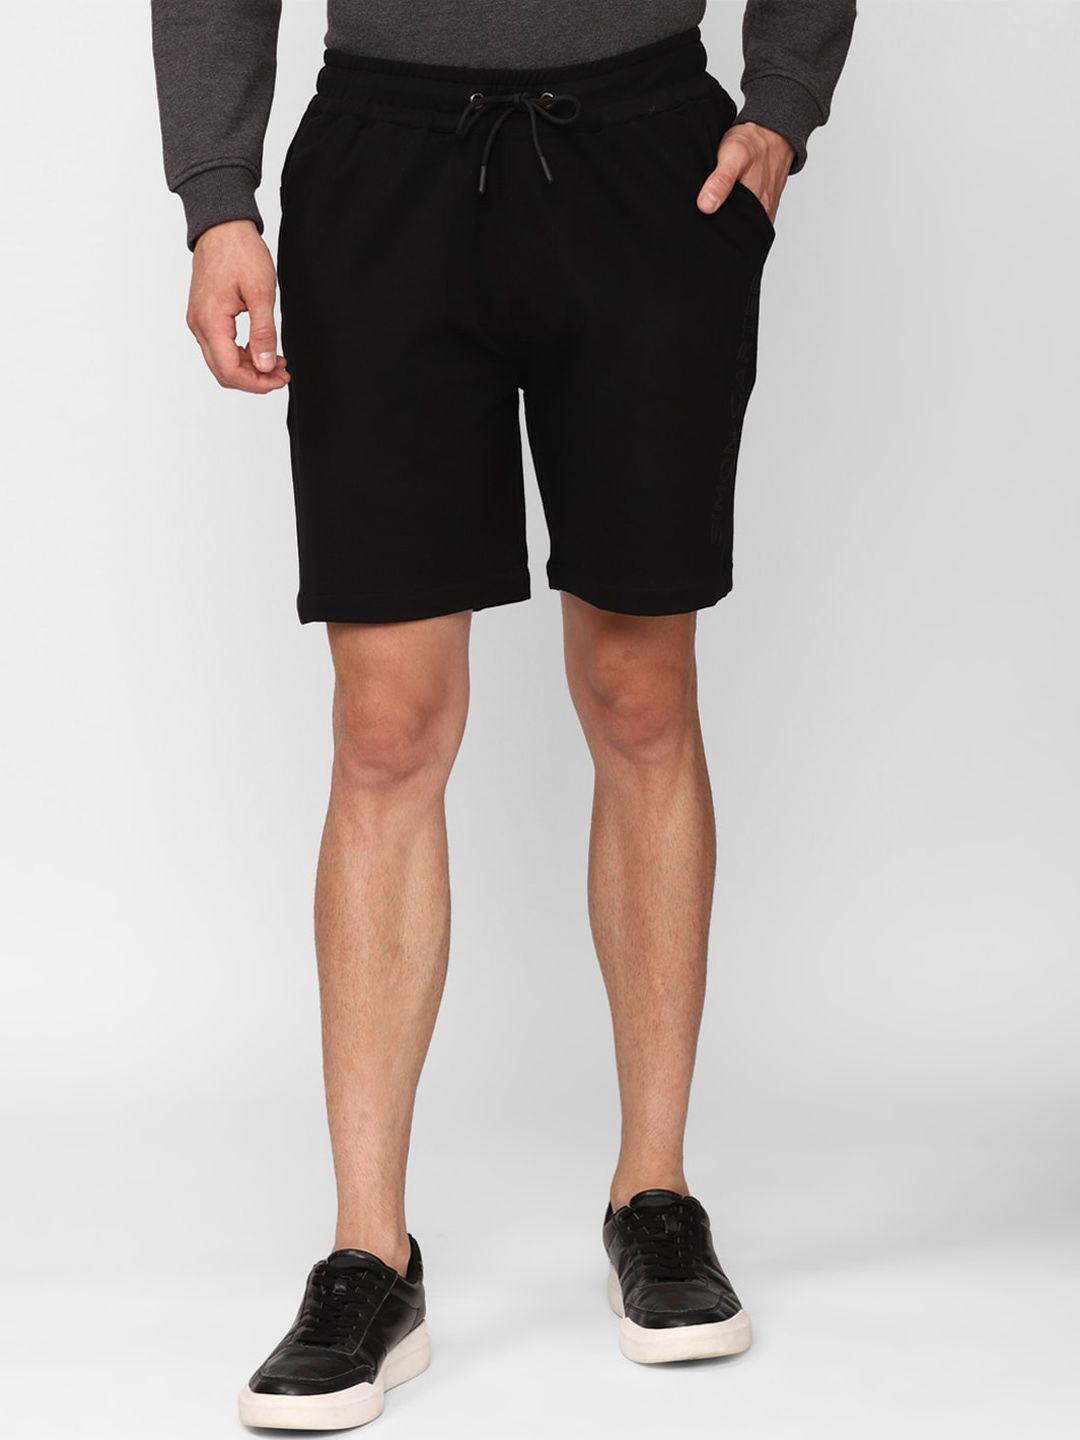 simon-carter-london-men-black-slim-fit-mid-rise-regular-shorts